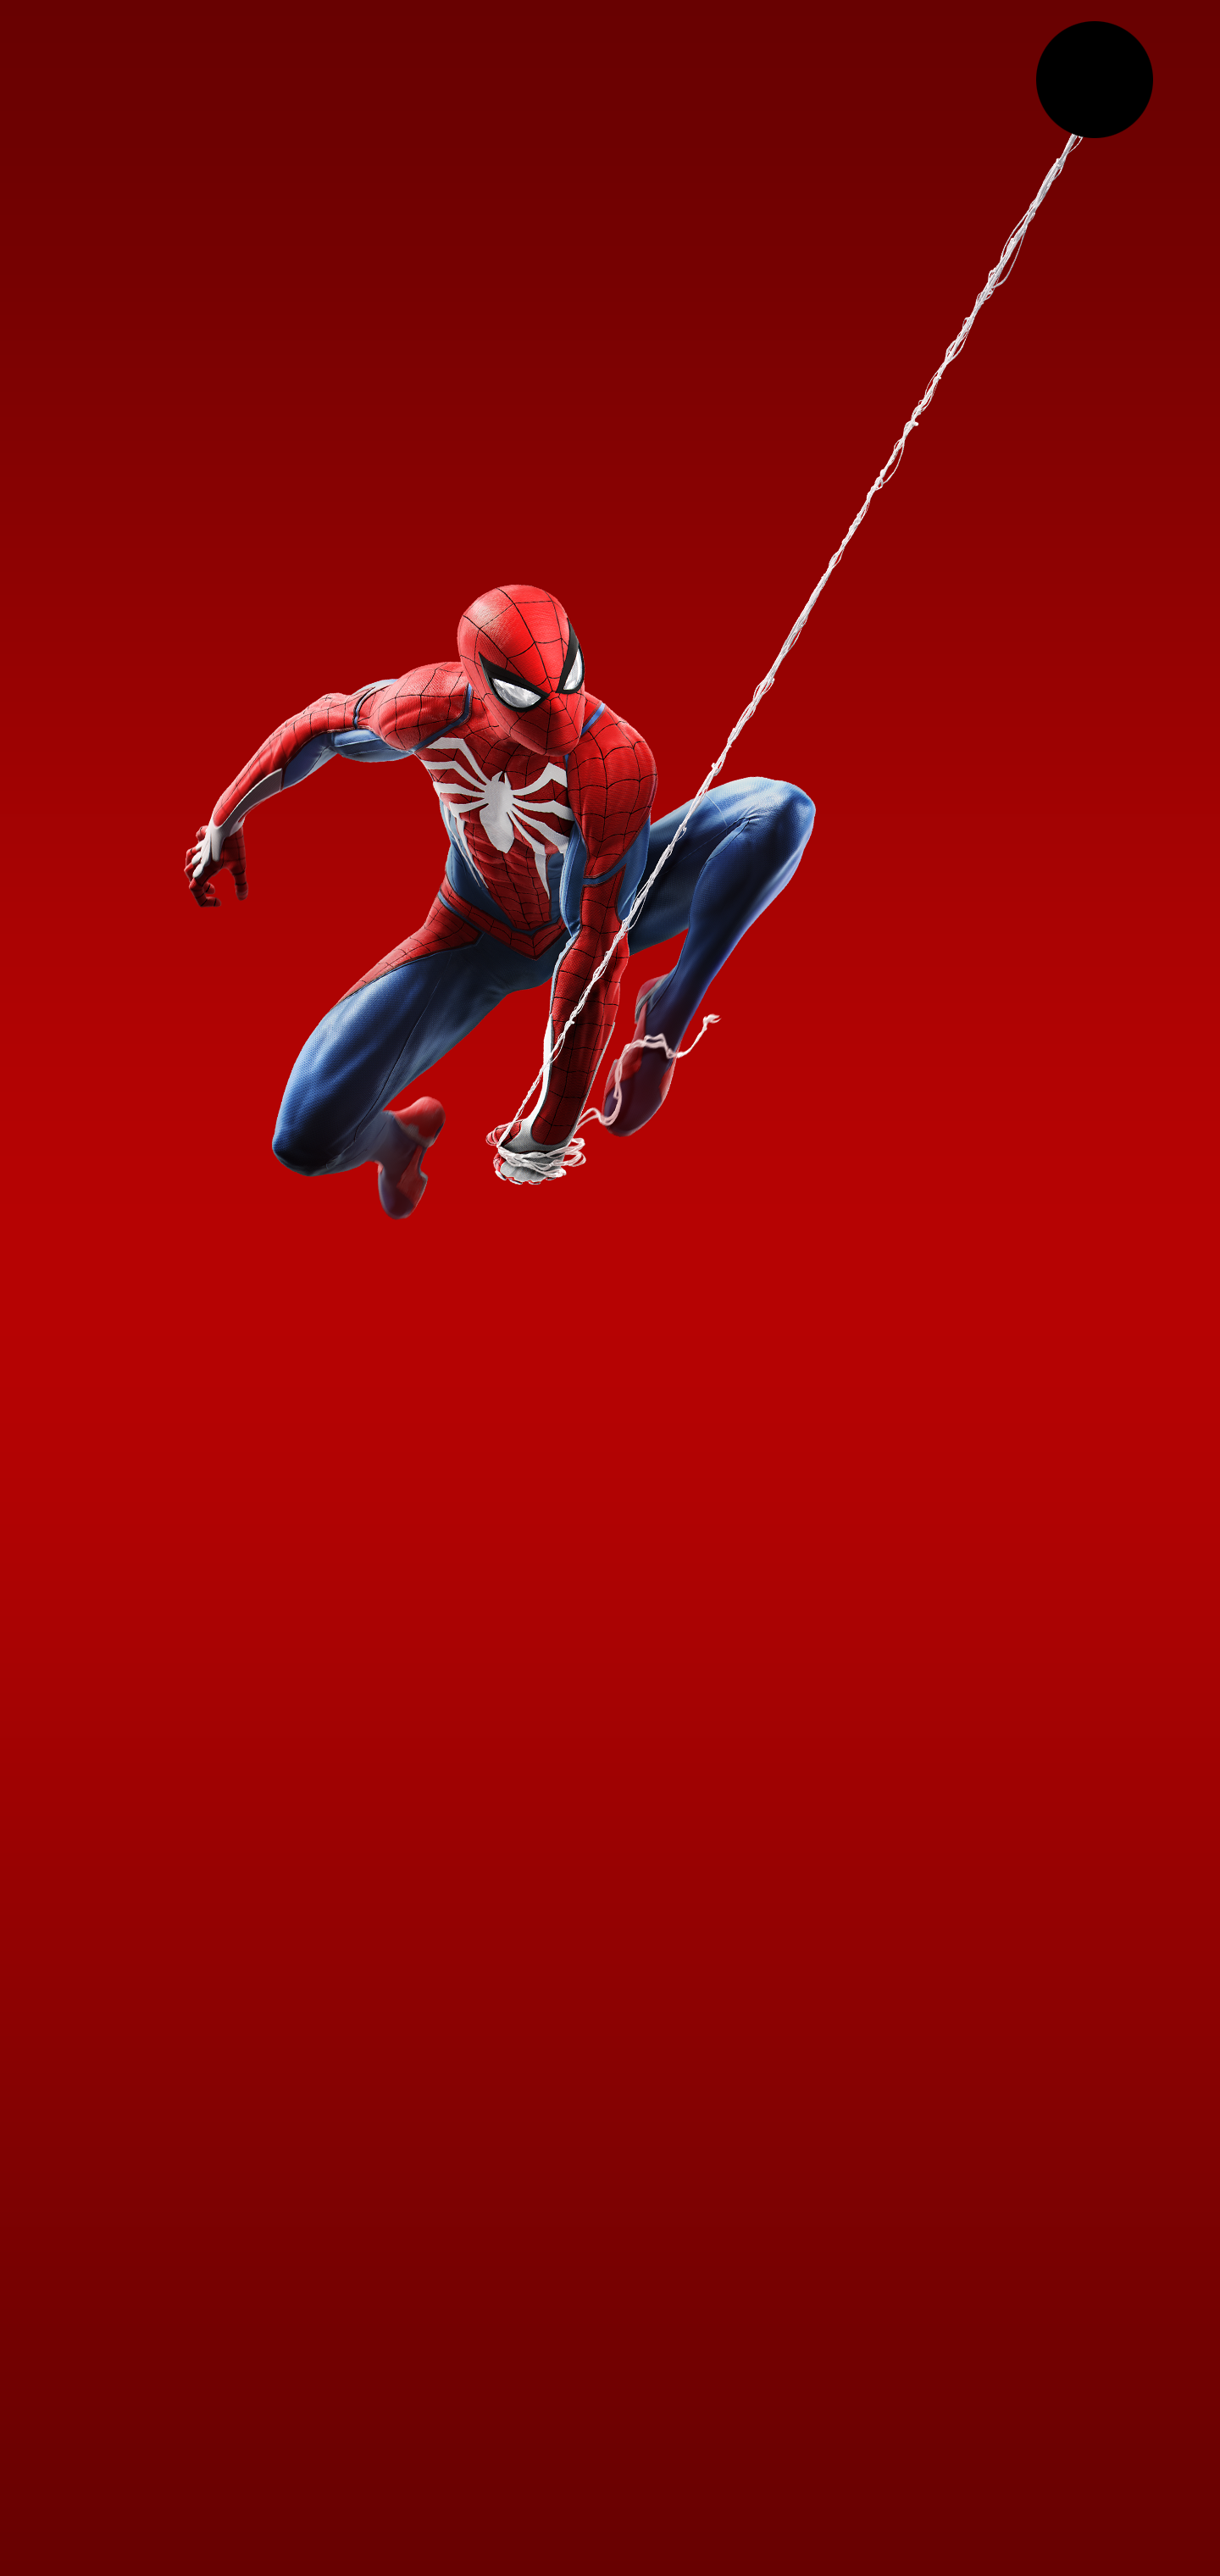 galaxy live wallpapers hd,rojo,hombre araña,personaje de ficción,superhéroe,deporte extremo